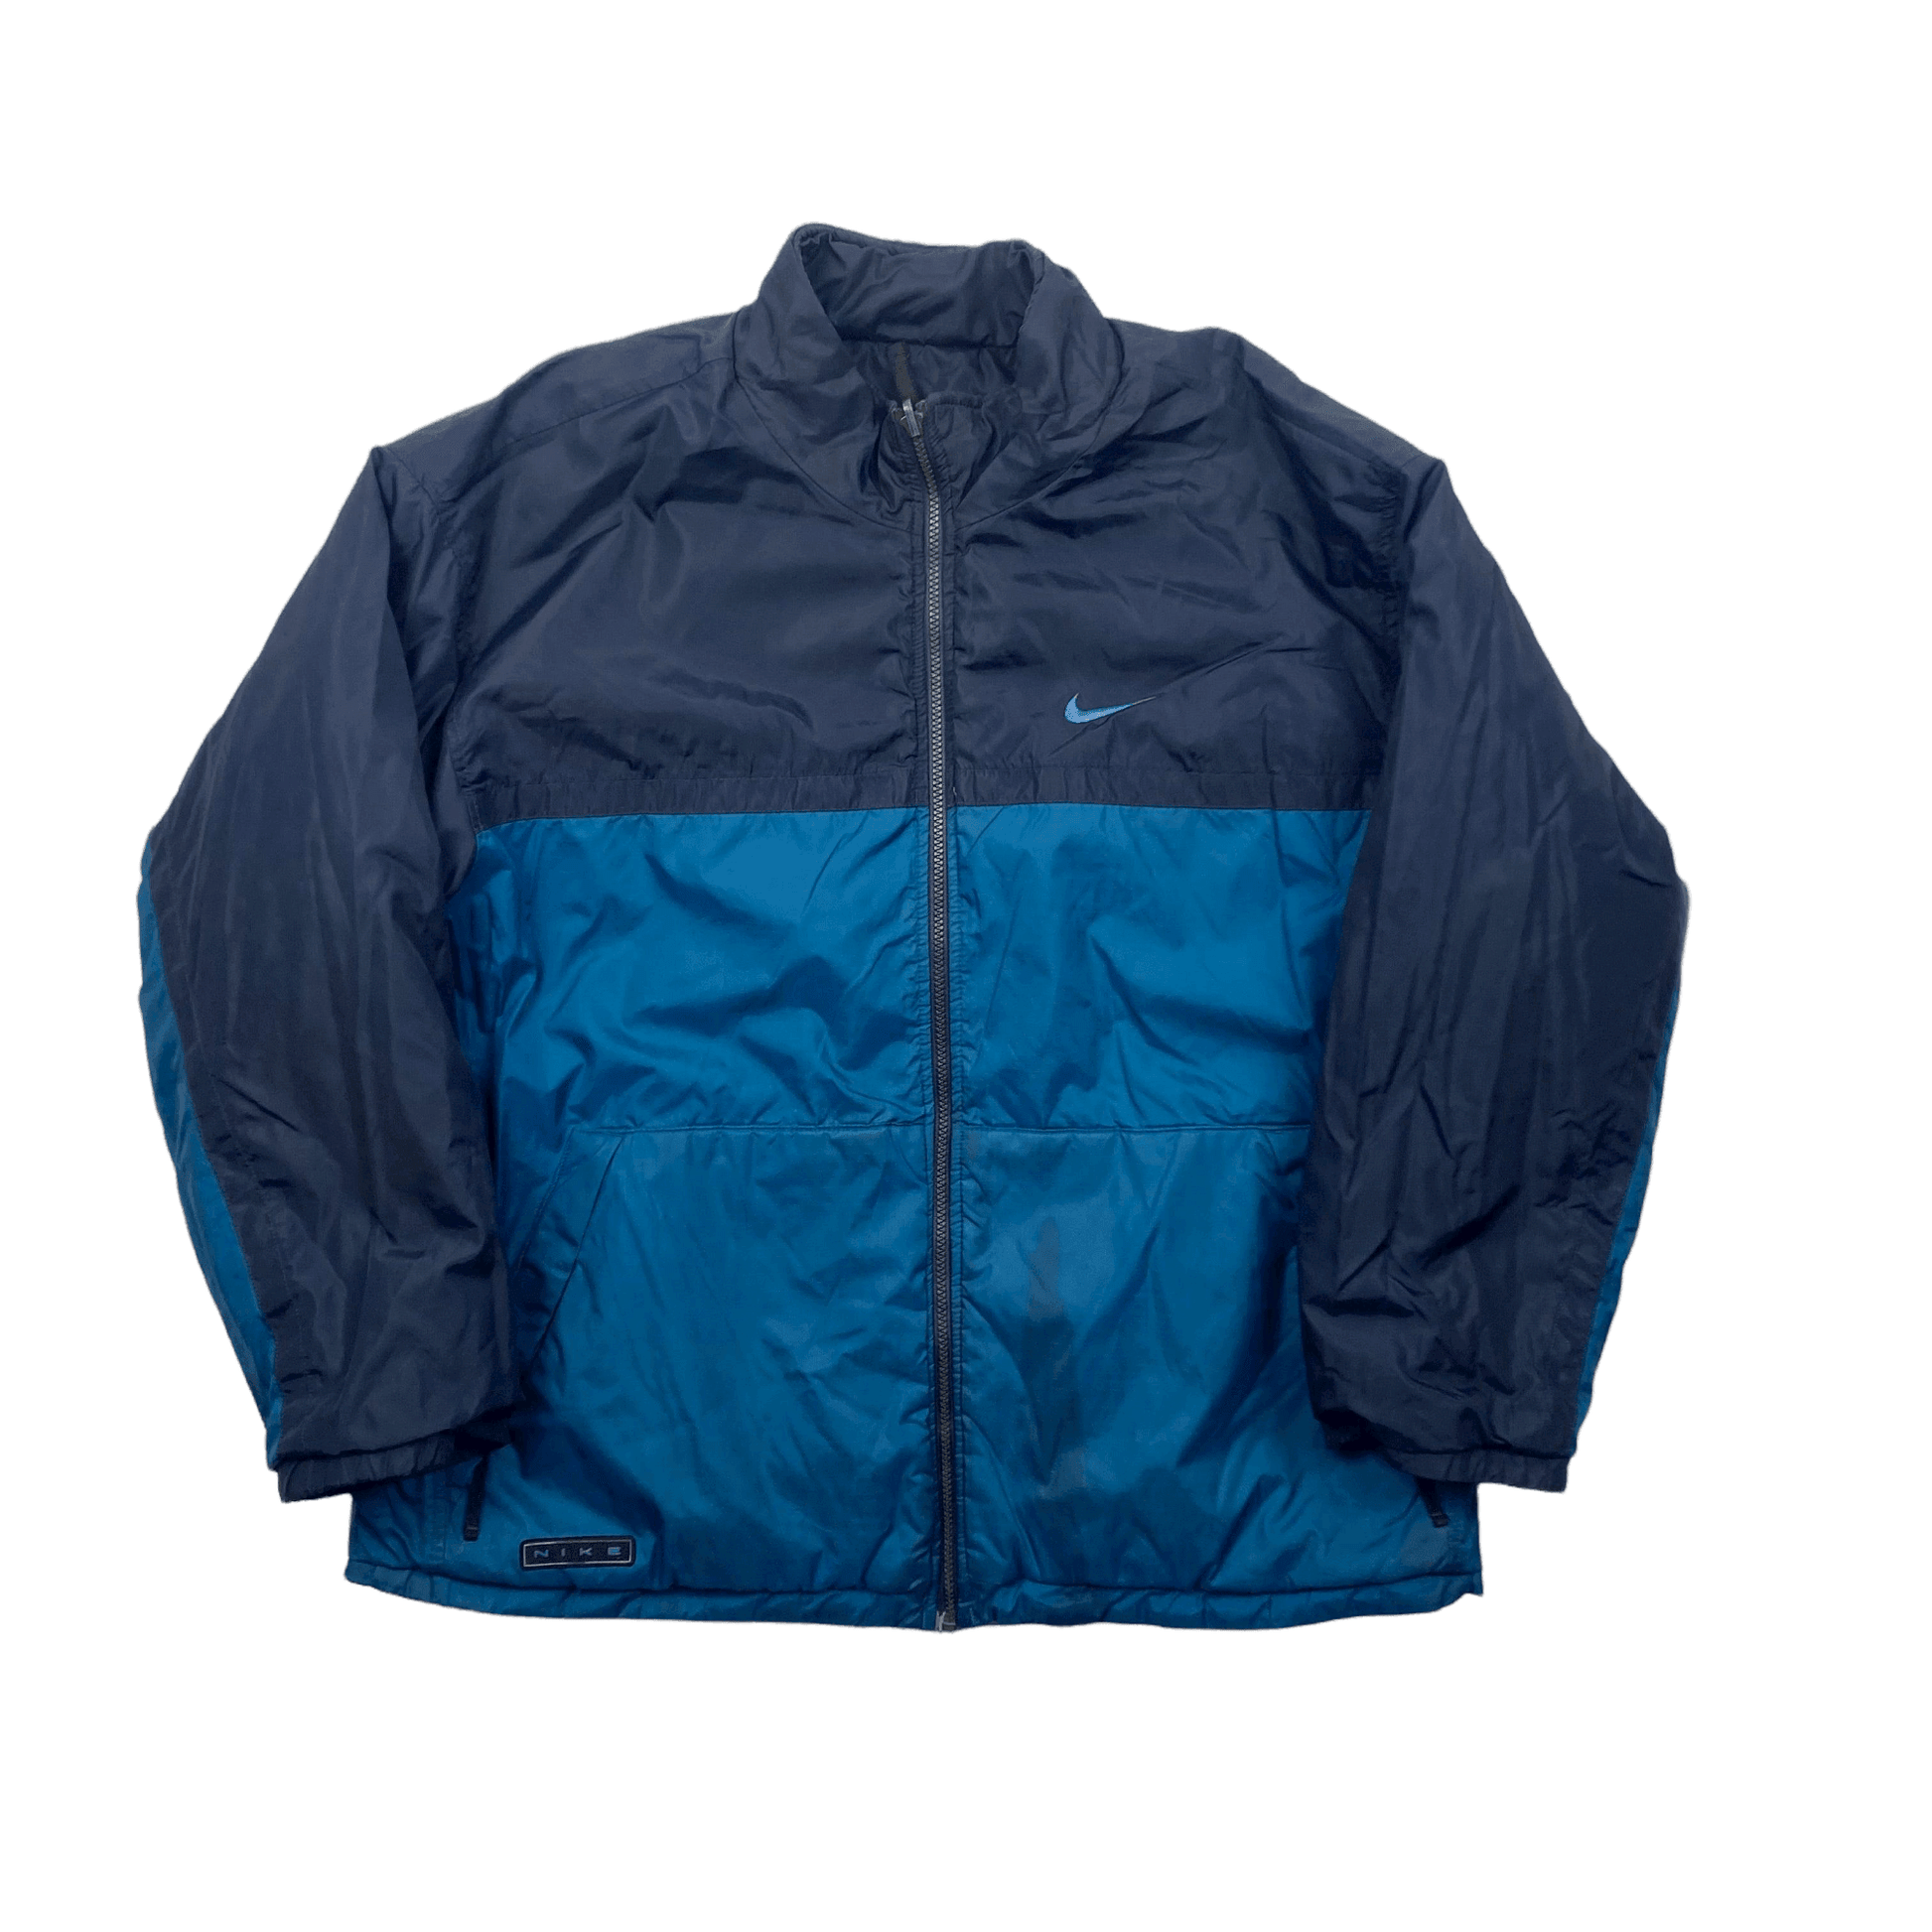 Vintage 90s Navy Blue Nike Reversible Coat/ Jacket - Large